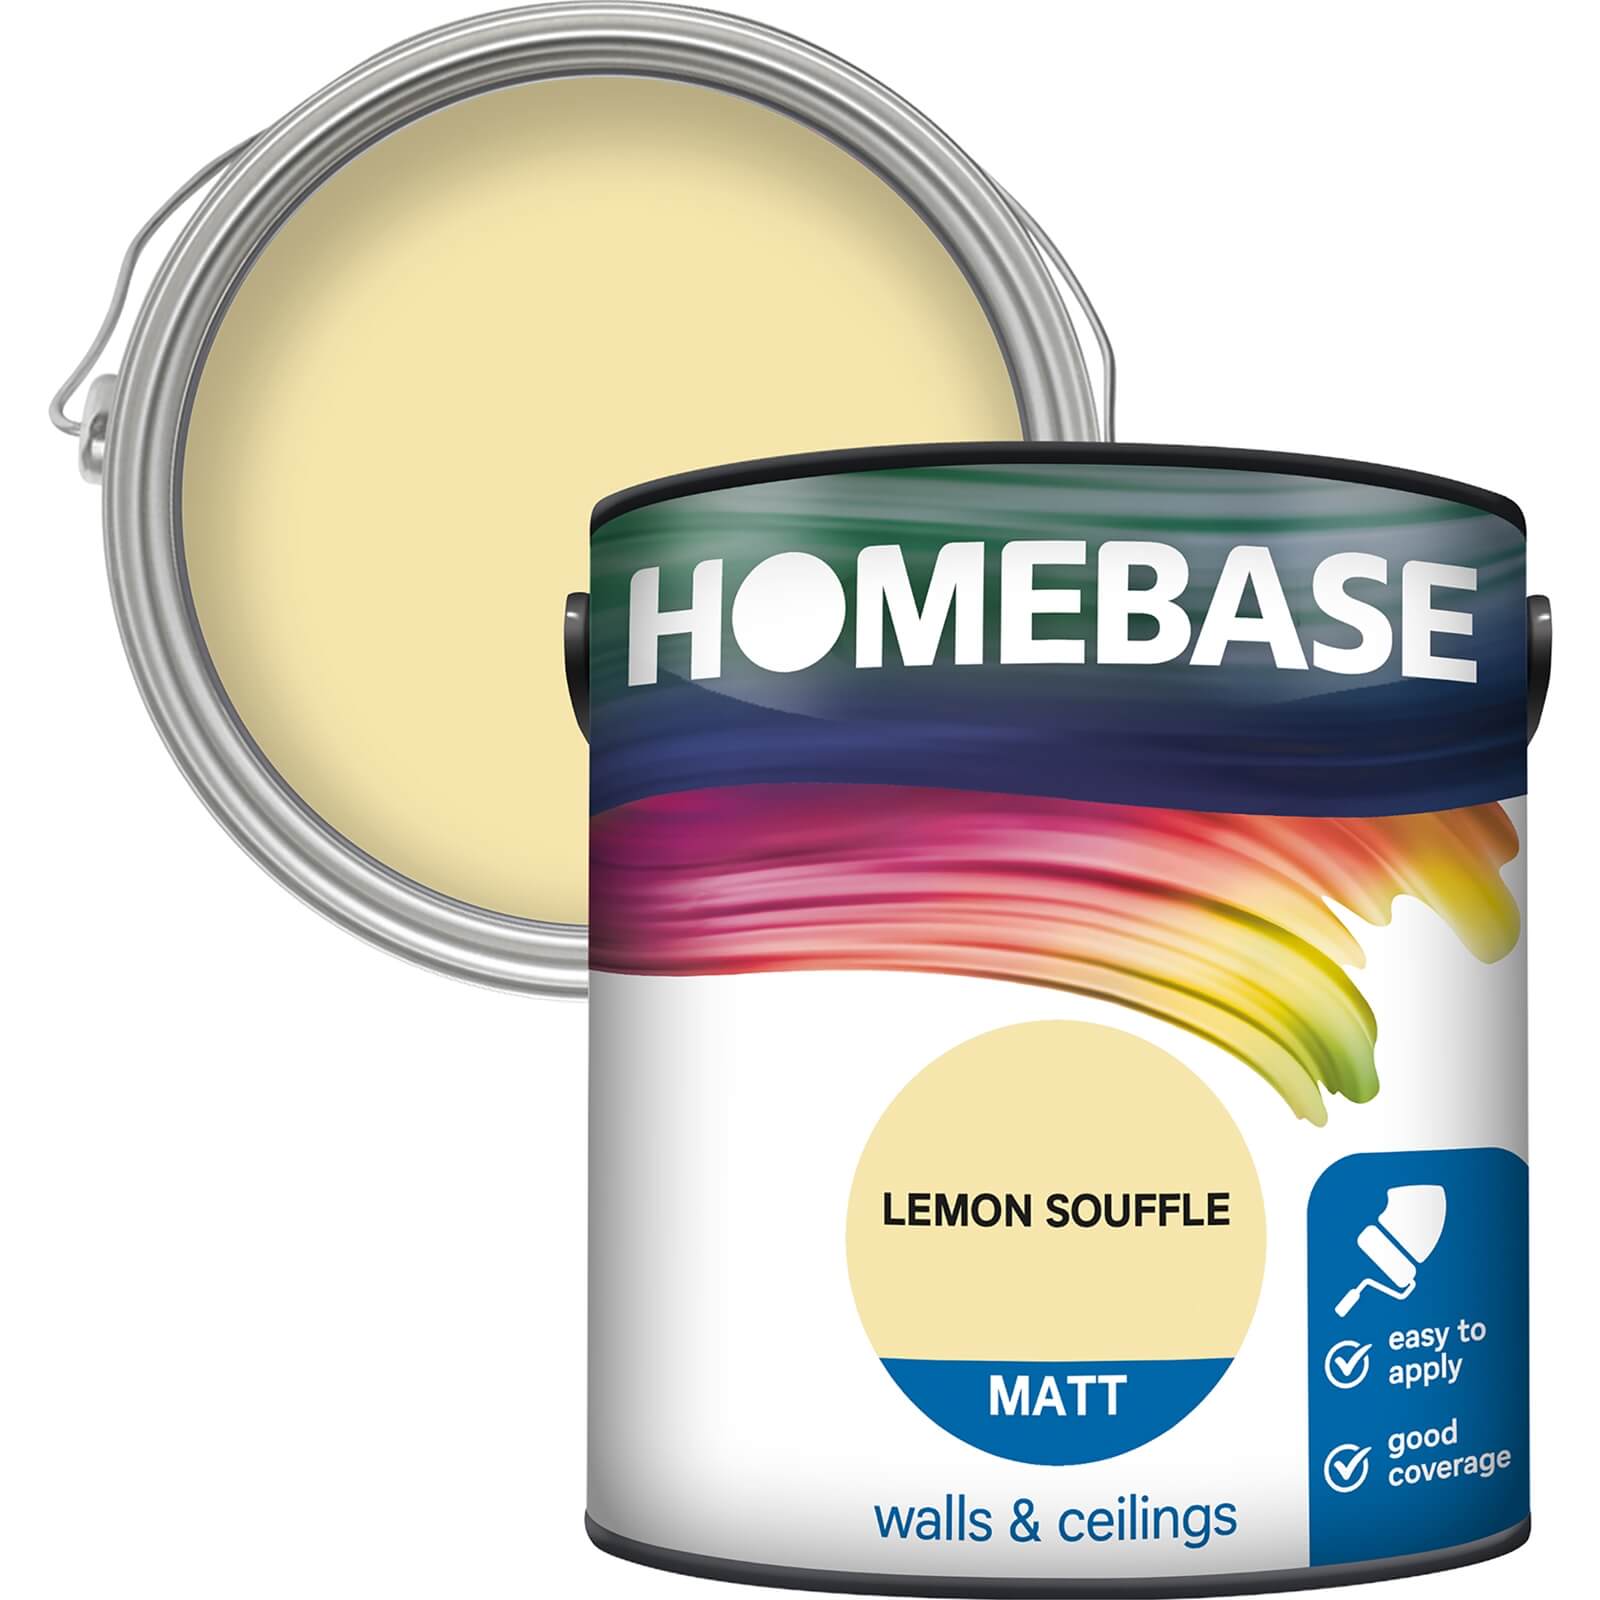 Homebase Matt Emulsion Paint Lemon Souffle - 2.5L